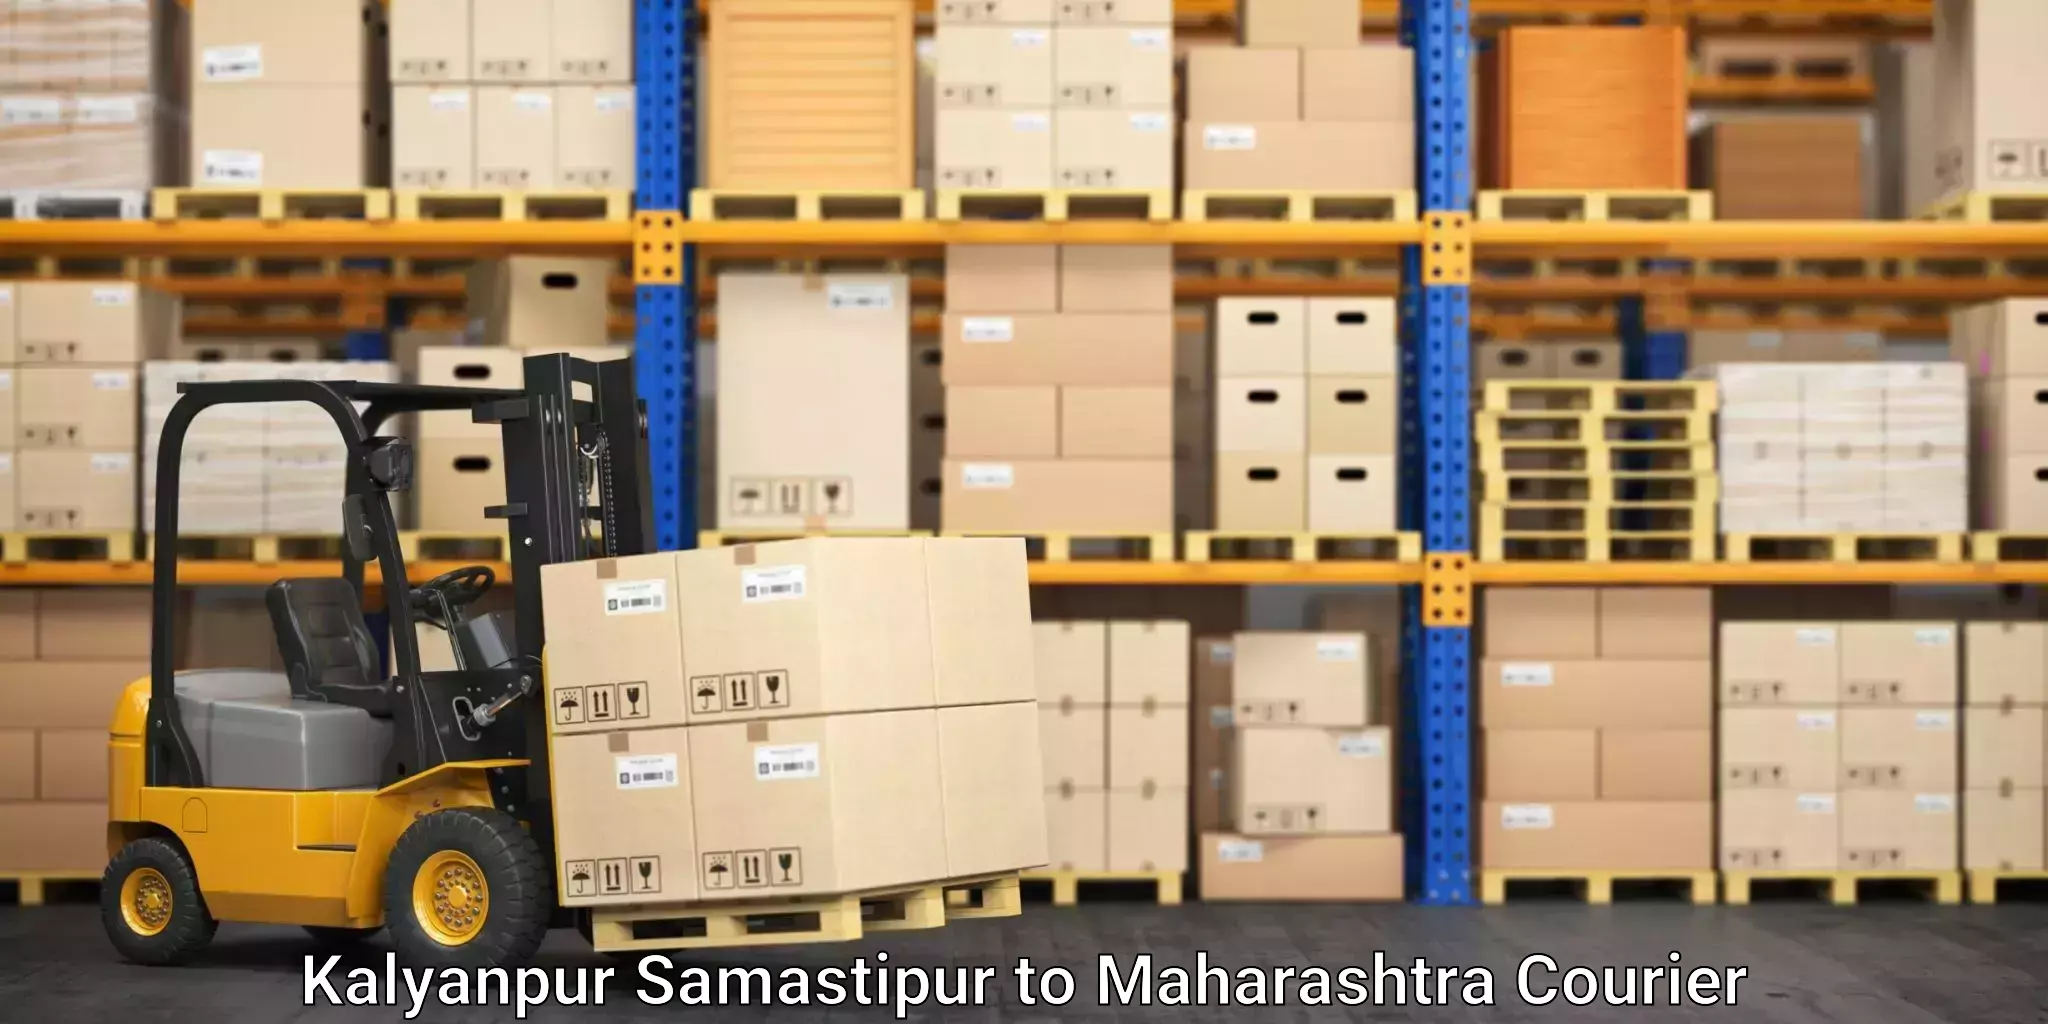 Furniture moving solutions Kalyanpur Samastipur to Virar